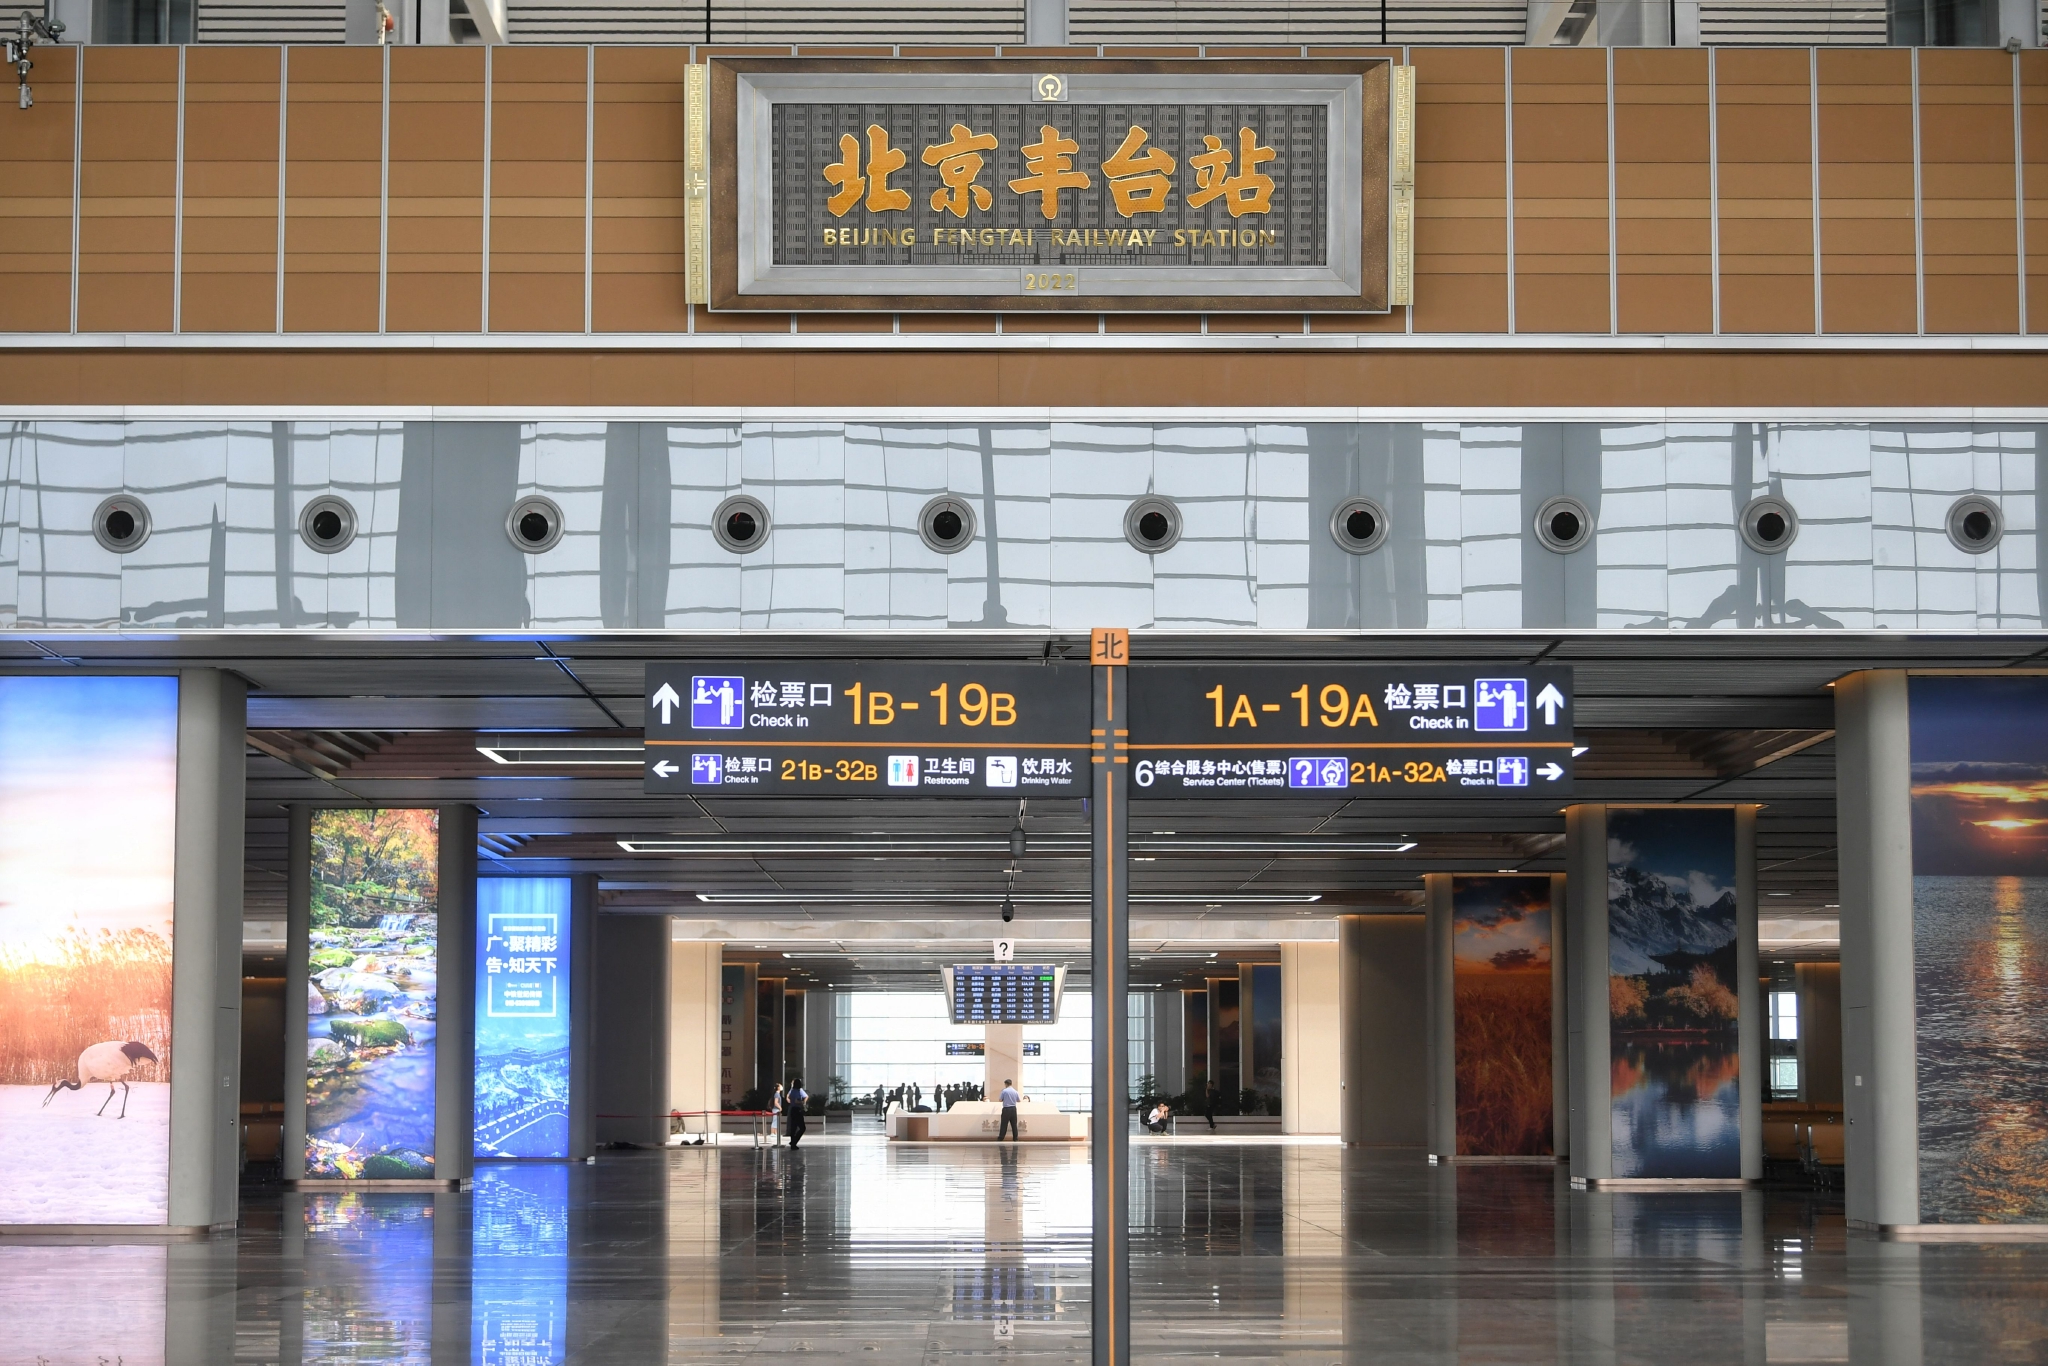 北京丰台站二层候车大厅内景。  新京报记者 王贵彬 摄